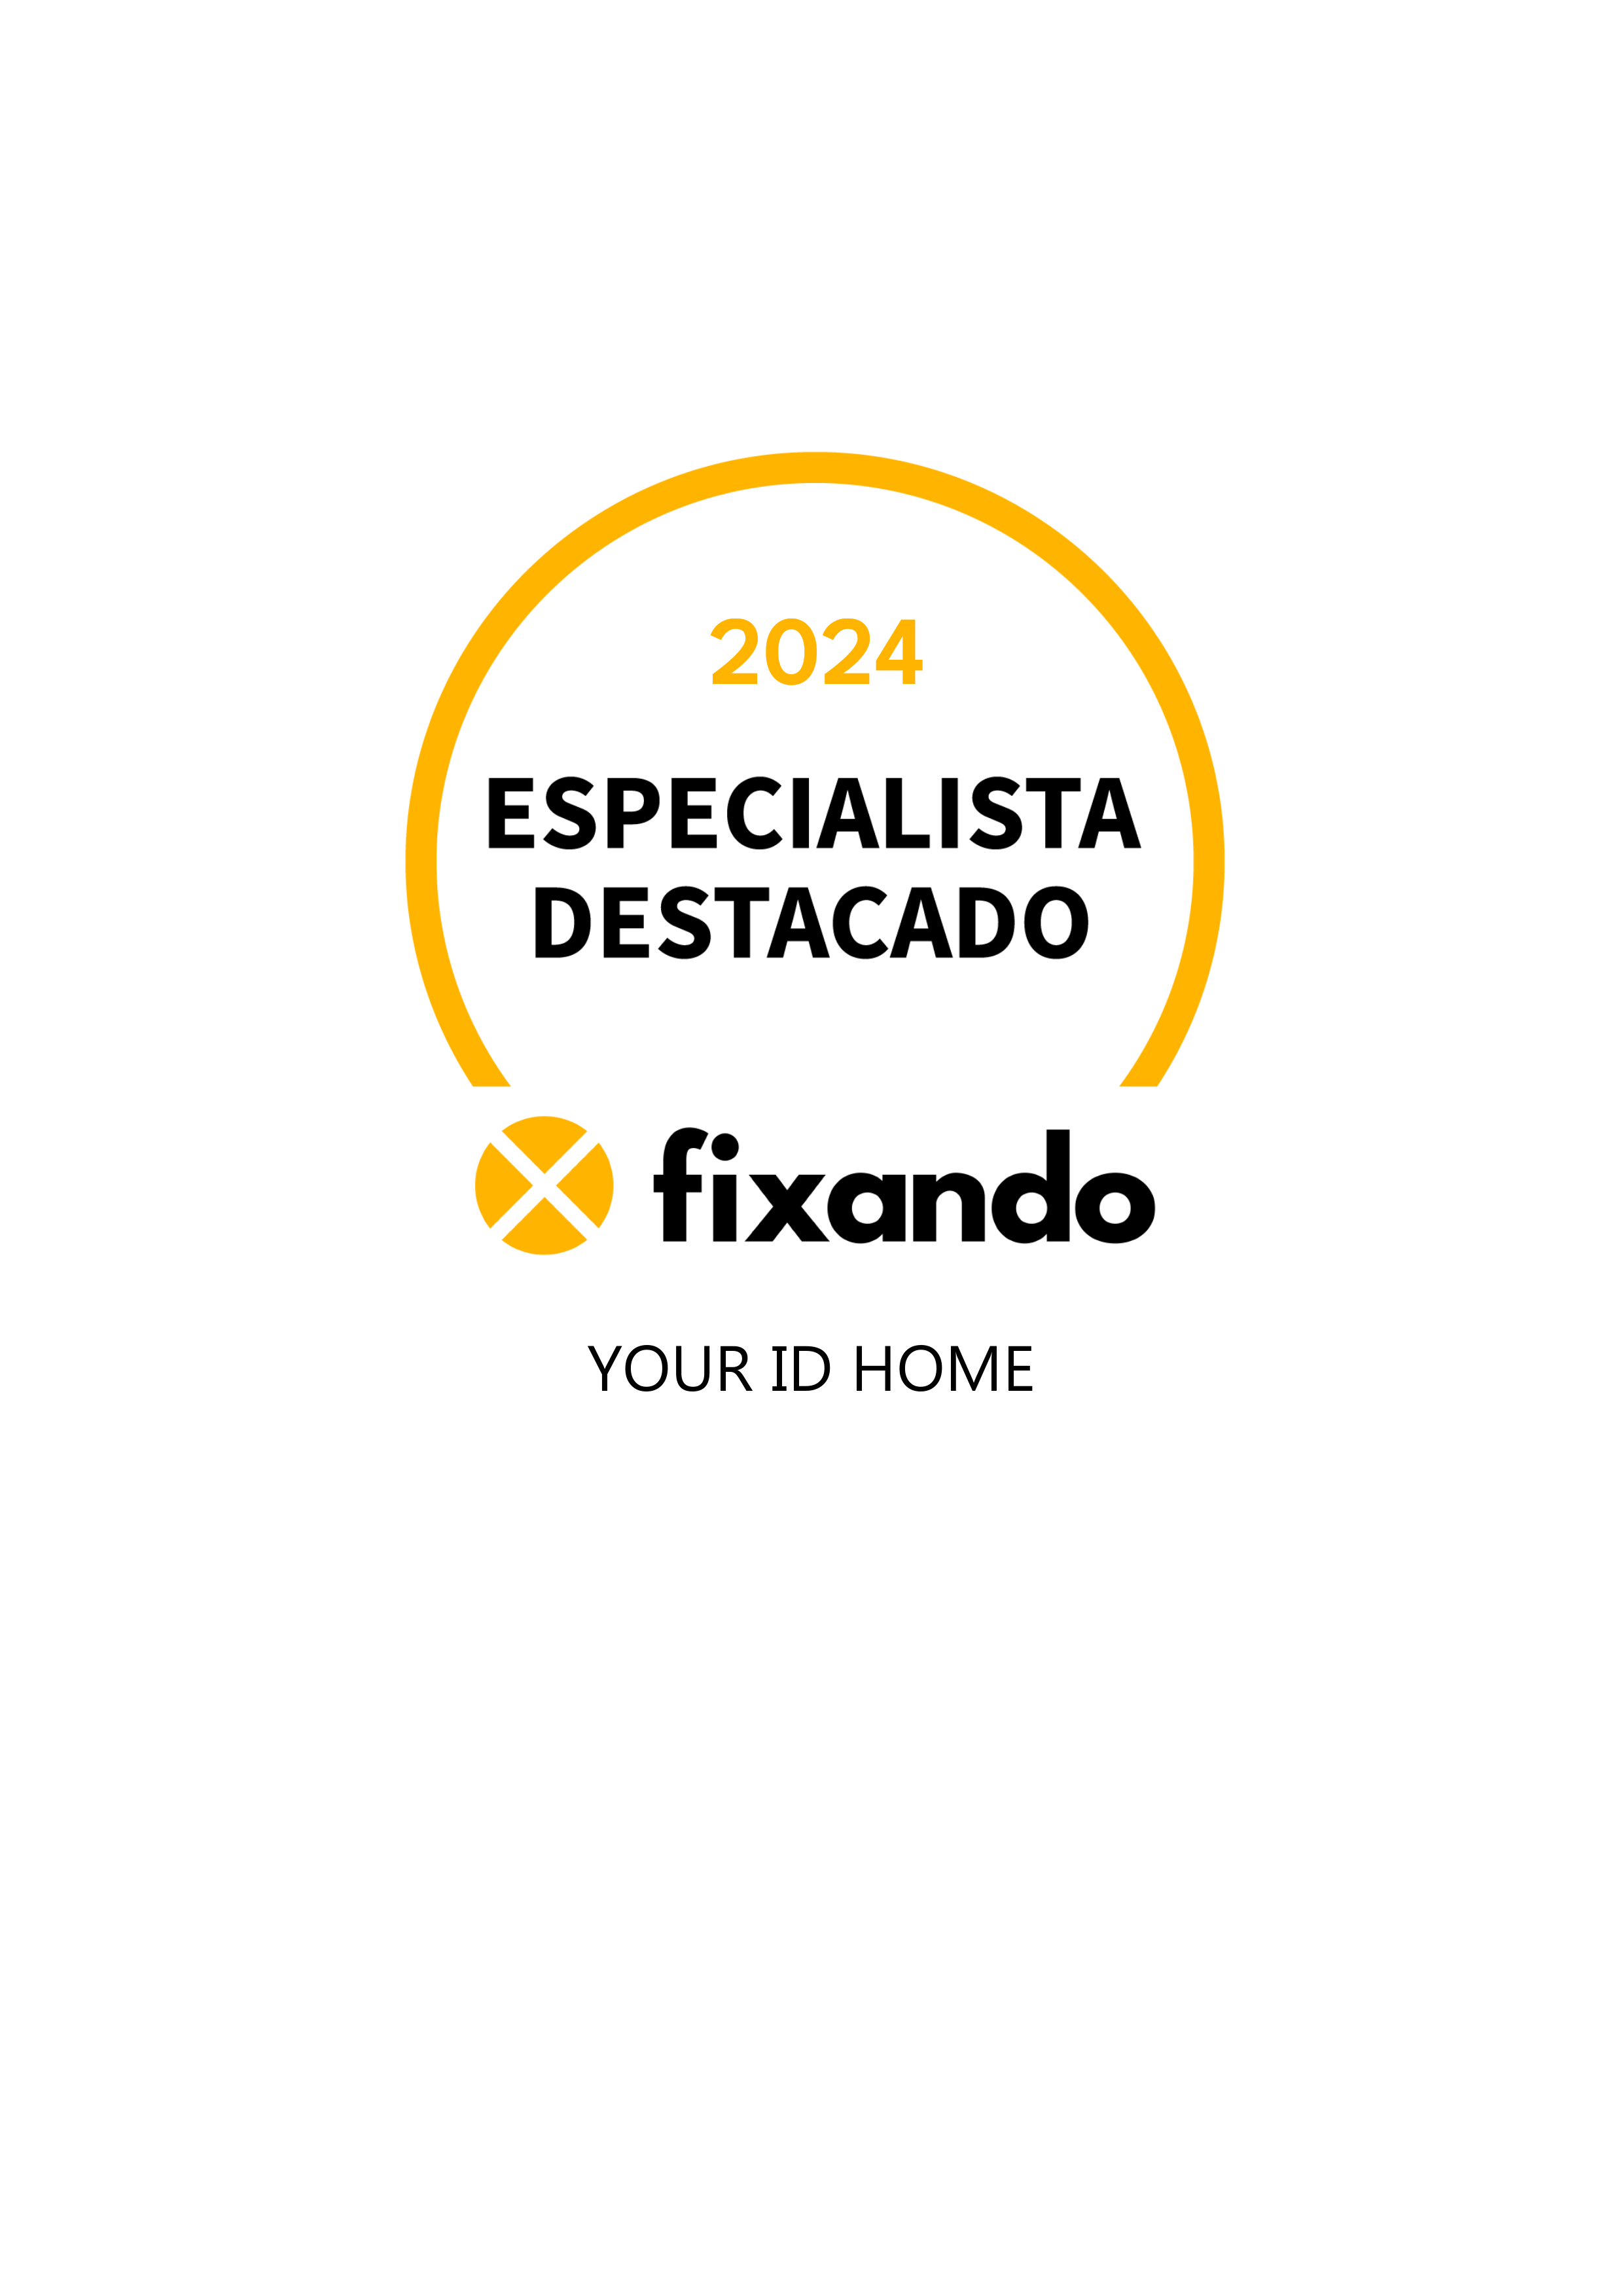 Your ID Home - Vila Nova de Famalicão - Valorização Imobiliária